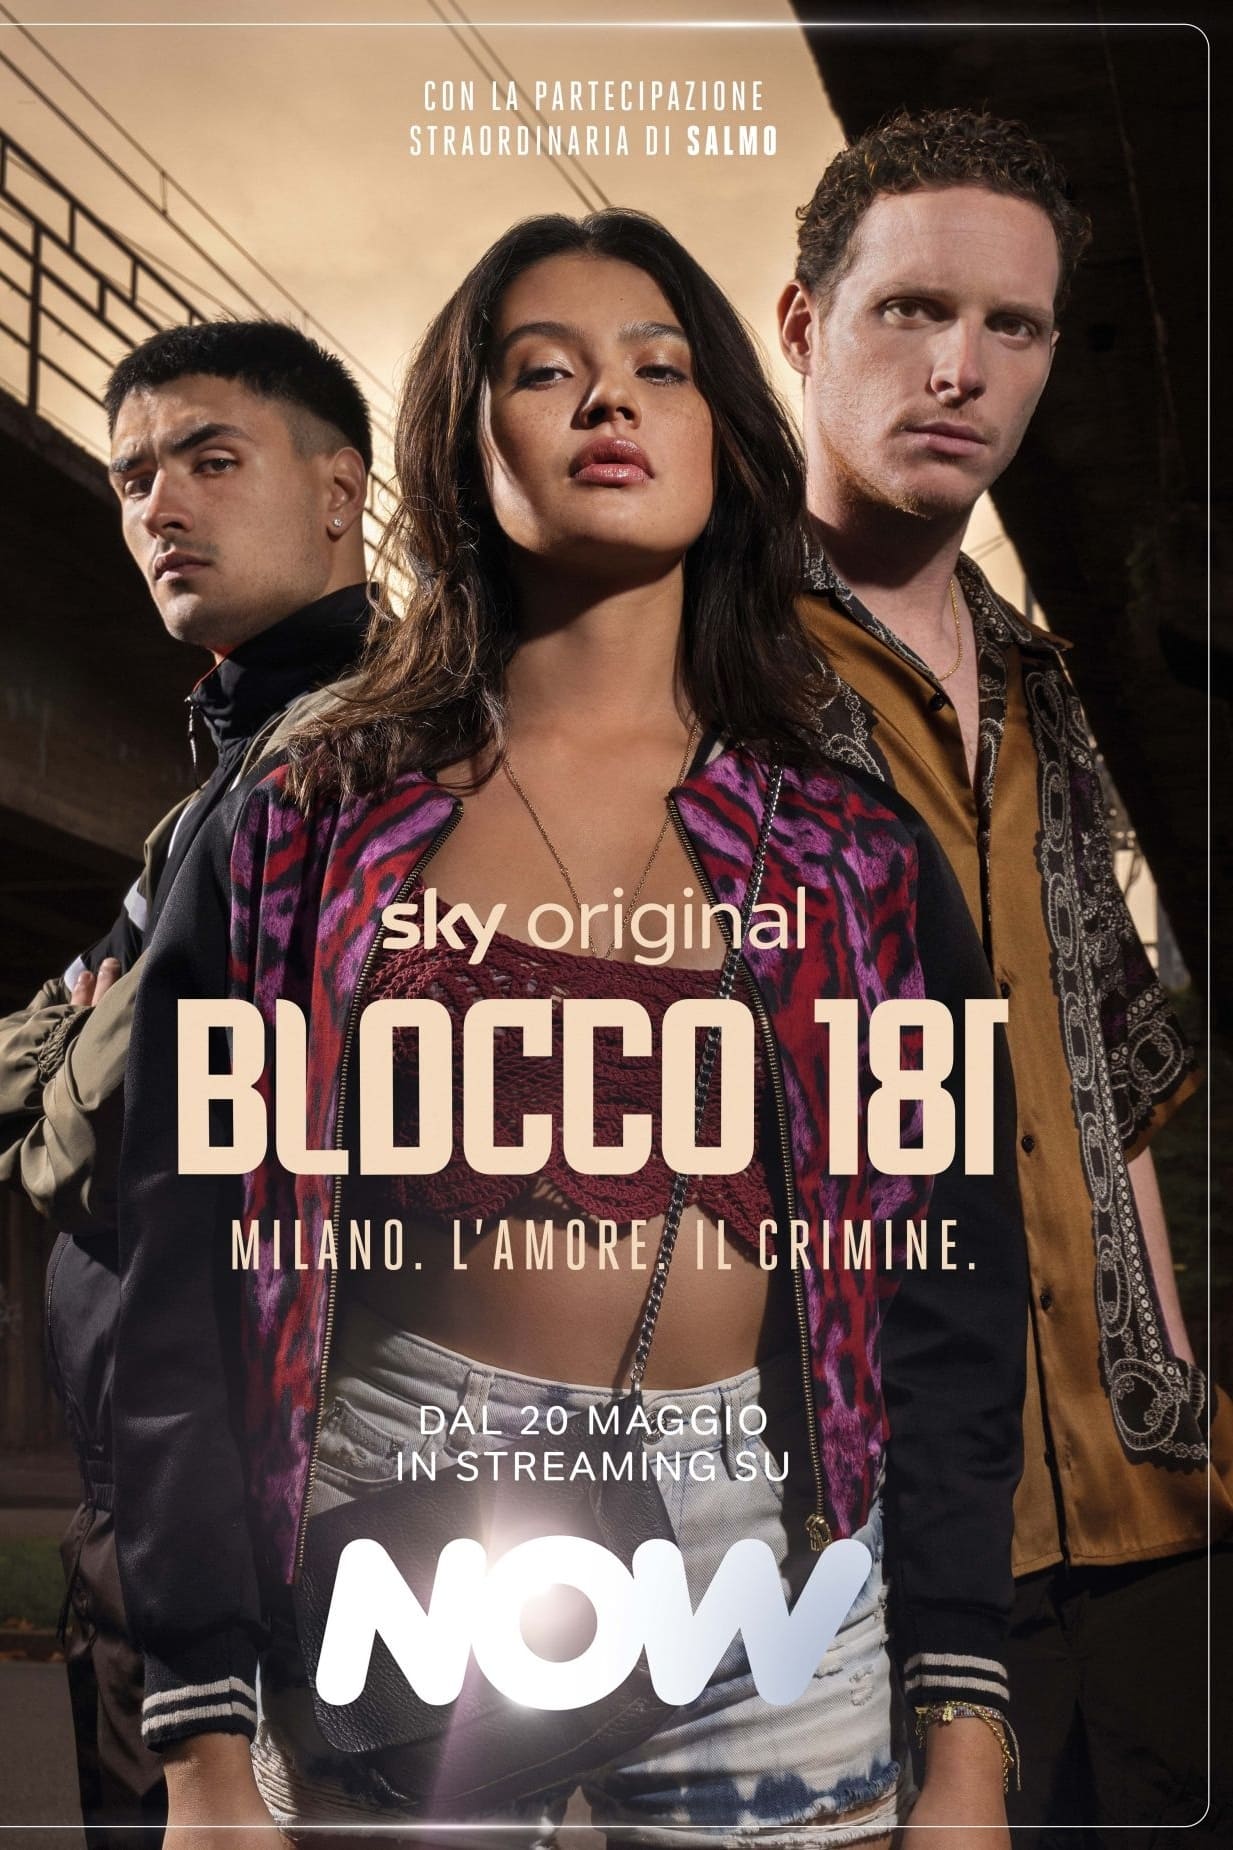 Plakát pro film “Blocco 181”